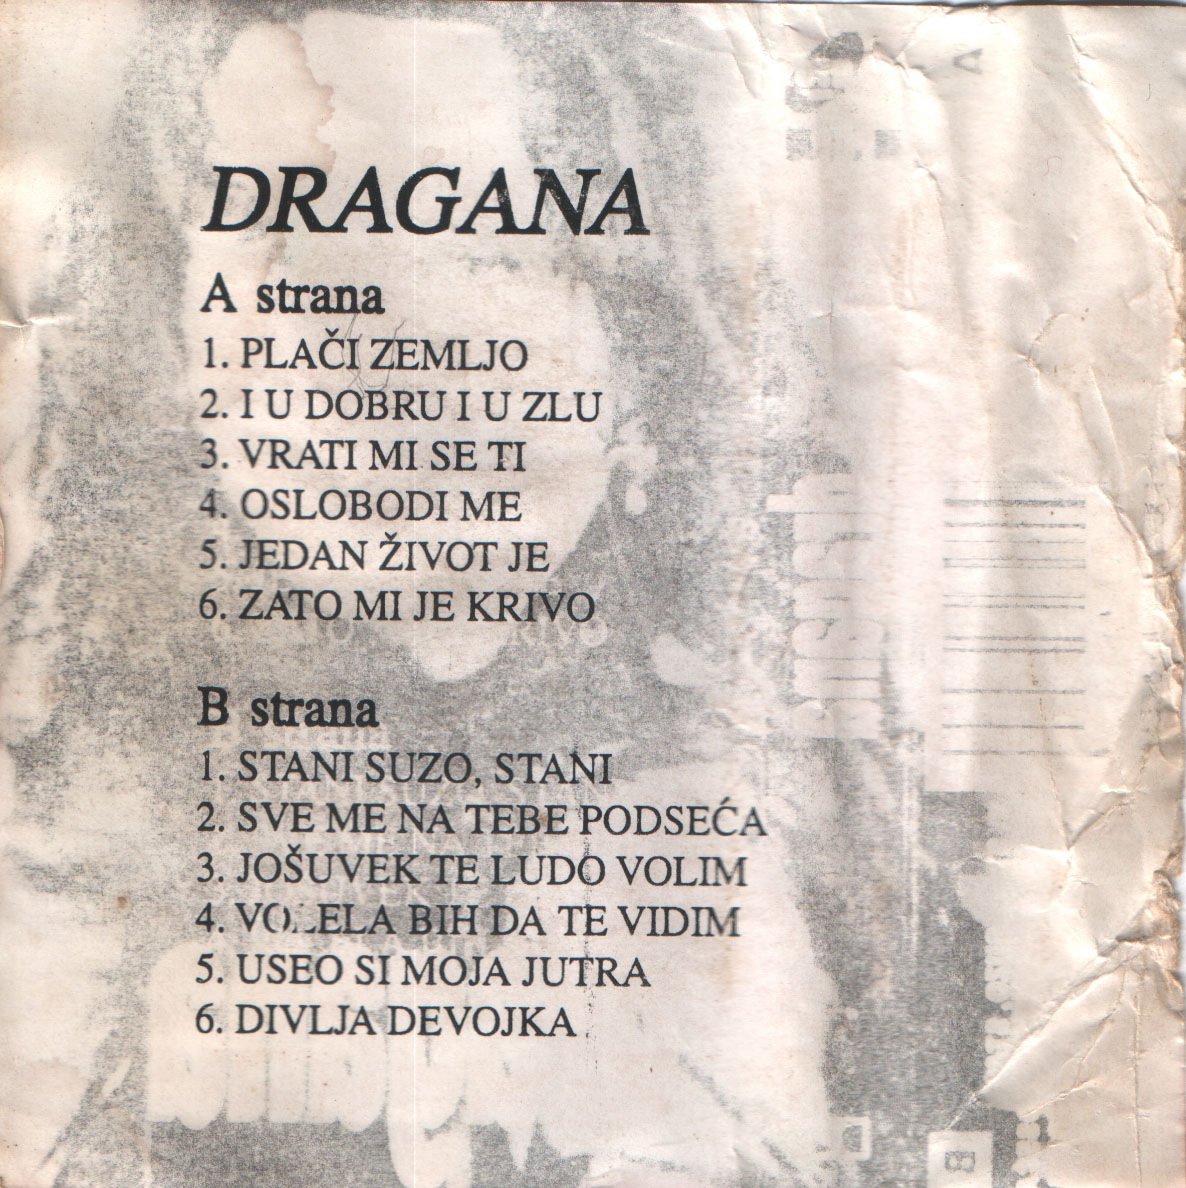 Dragana Mirkovic 1995 Placi zemljo z